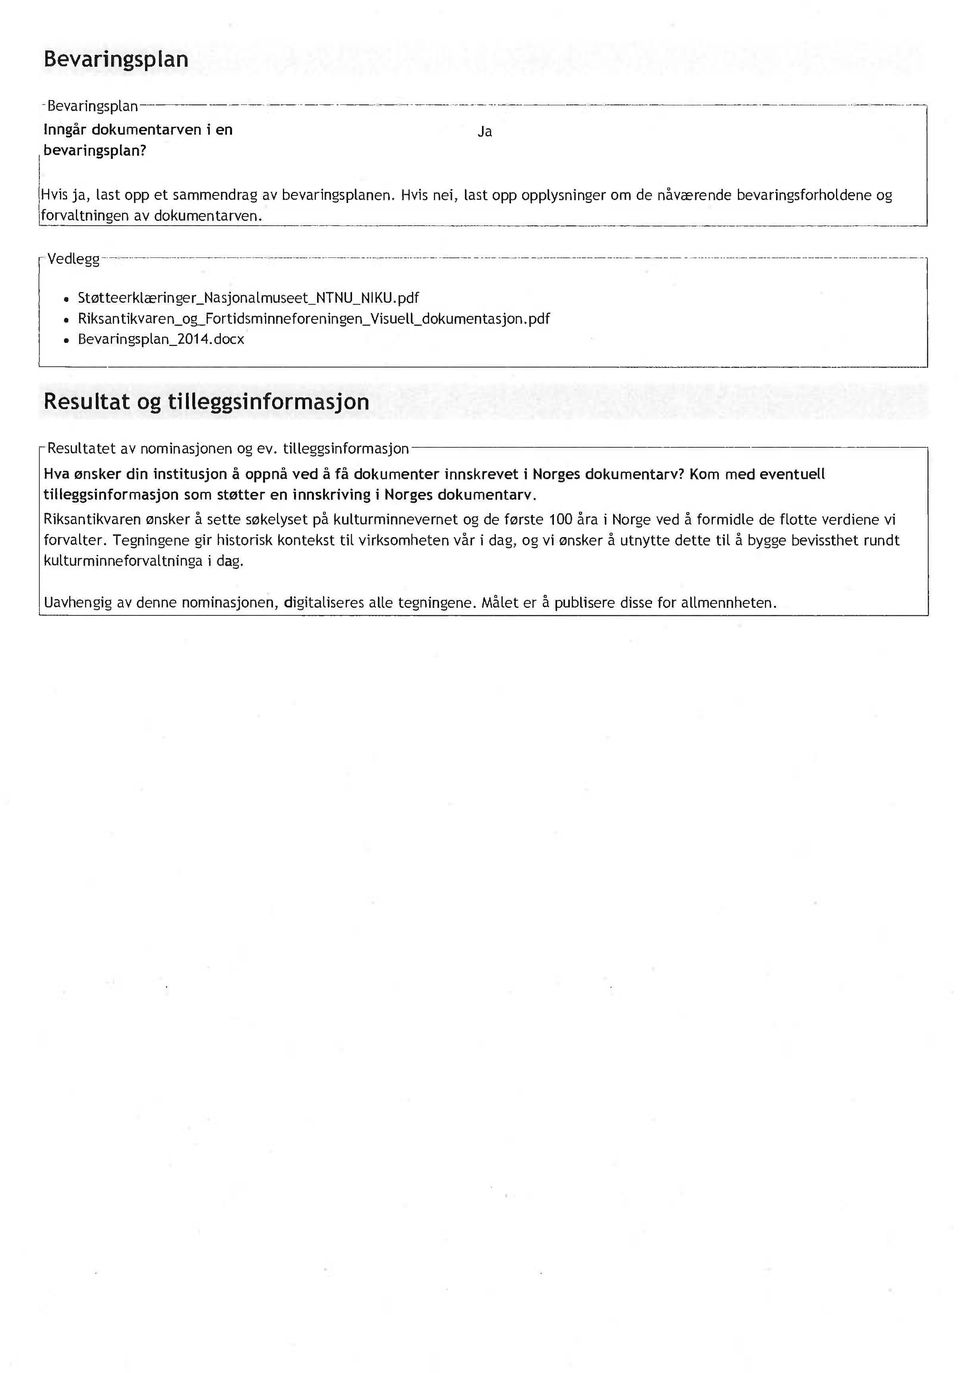 pdf Riksantikvaren_og_Fortidsminneforeningen_Visuell_dokumentasjon. pdf Bevaringsplan_2014.docx Resultat og tilleggsinformasjon - Resultatet av nominasjonen og ev.